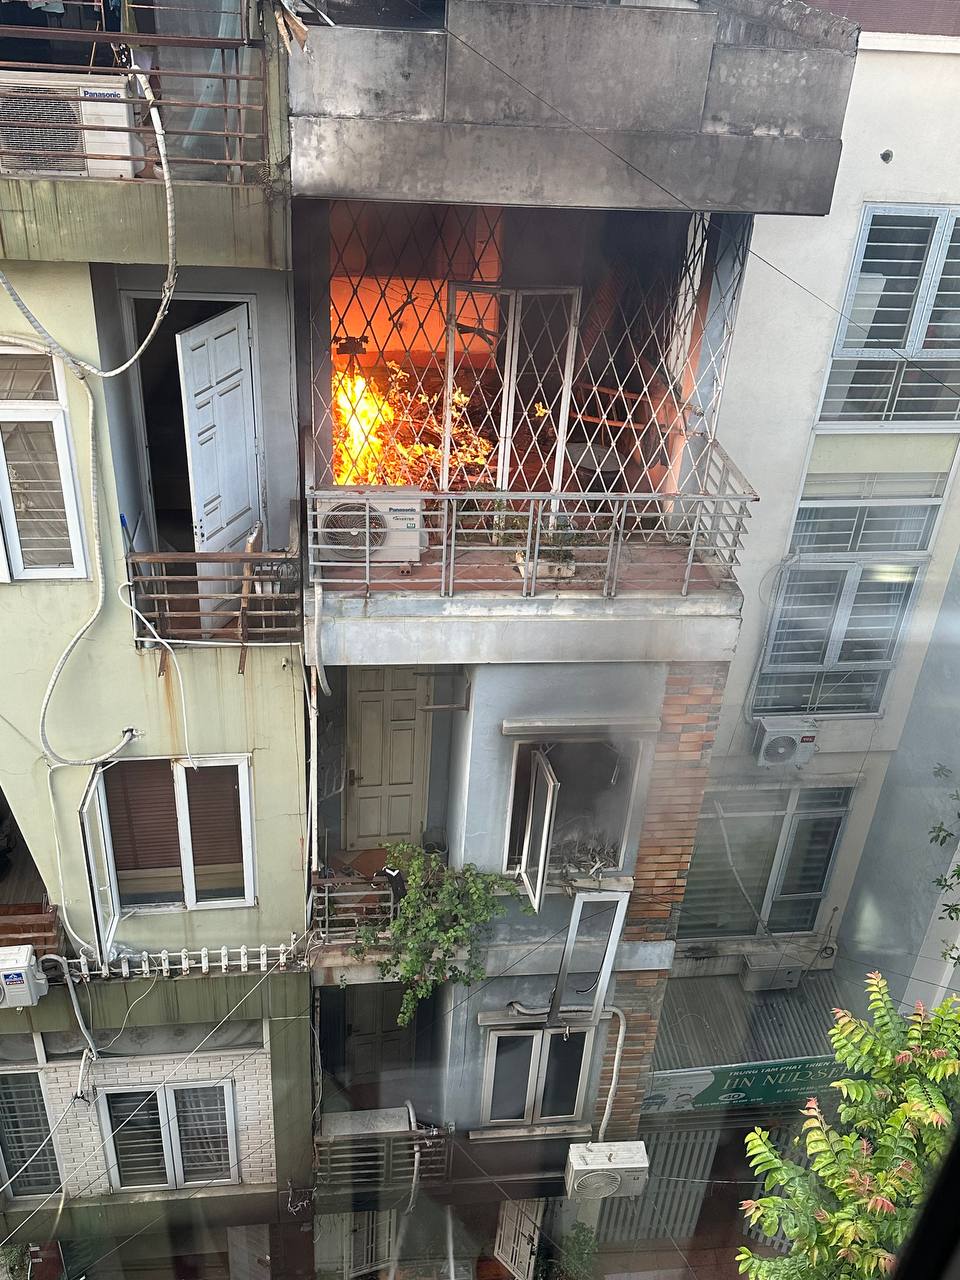 Nóng: Cháy lớn tại căn nhà 4 tầng ở Hà Nội， 2 bé trai cùng gia đình leo ban công thoát thân - Ảnh 1.